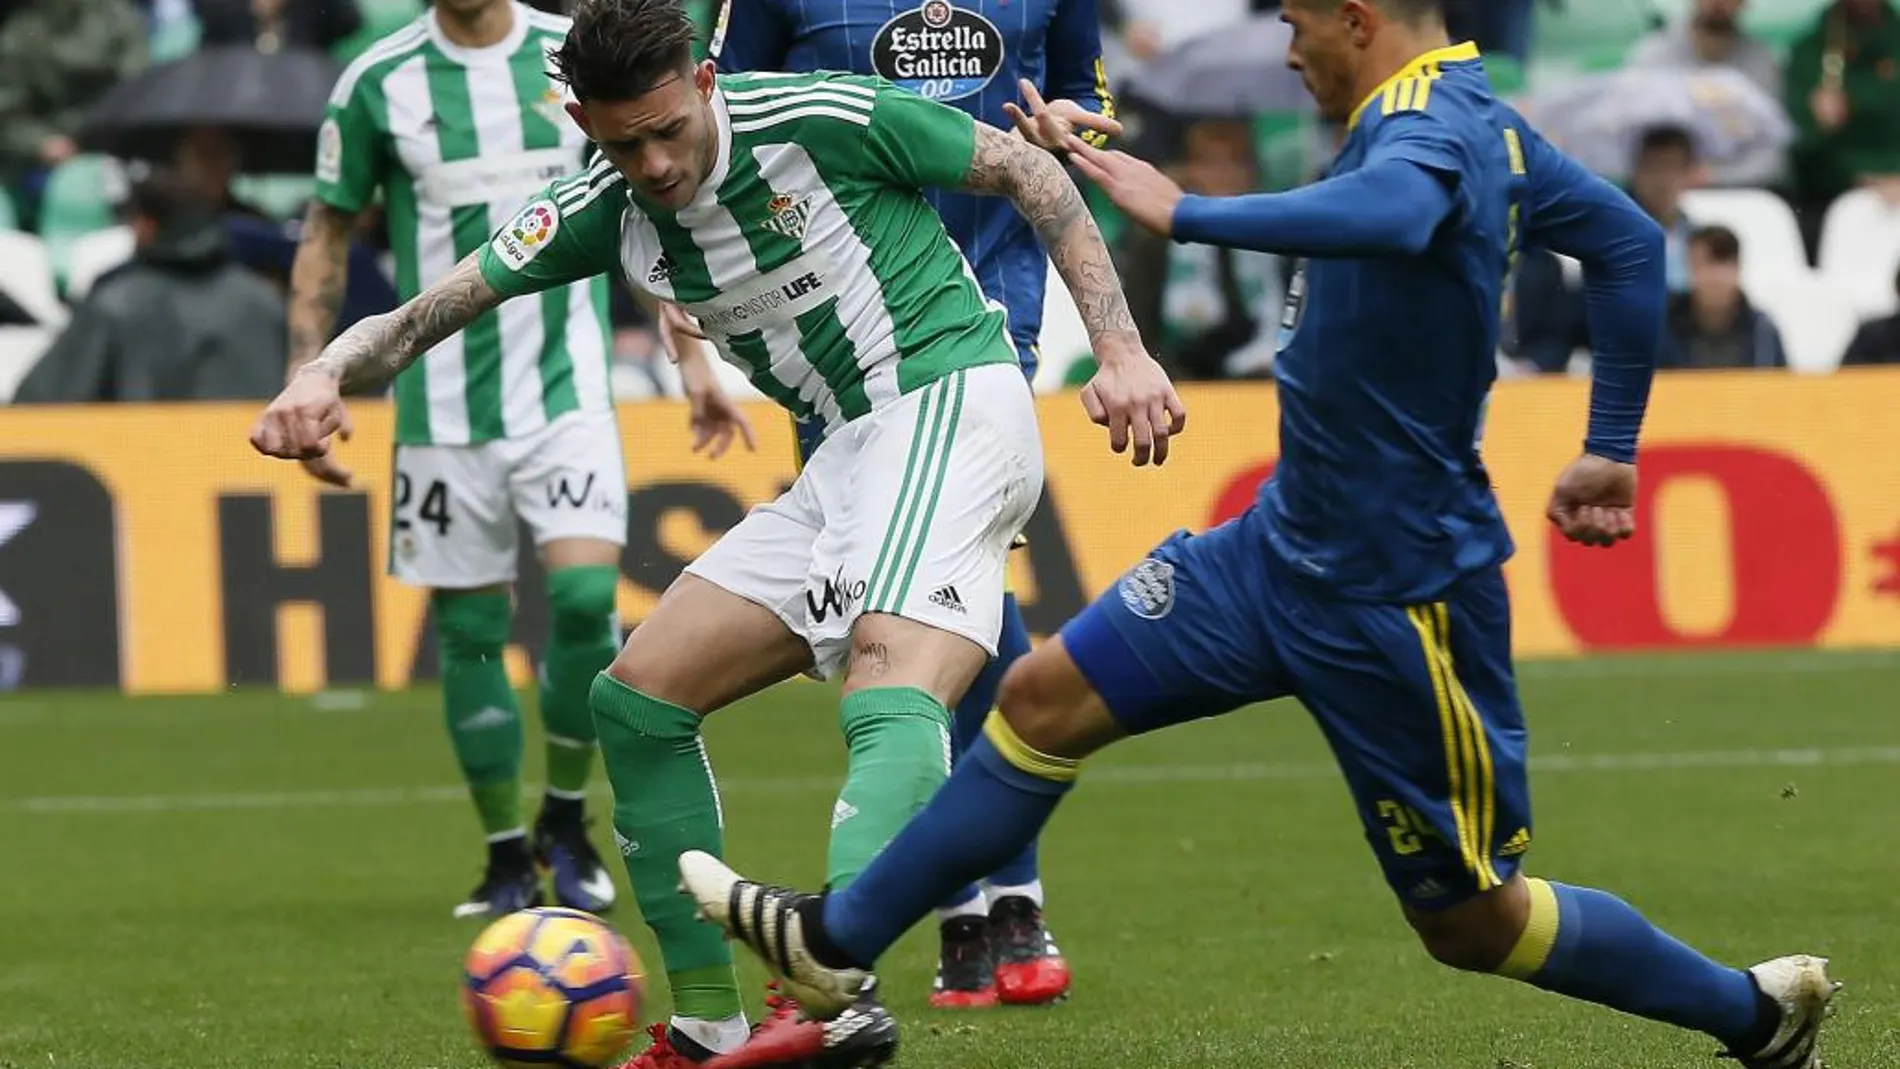 Antonio Sanabria, del Real Betis marca el segundo gol para su equipo ante la oposicion Sebastián Roncaglia,, del Ceeelta de Vigo